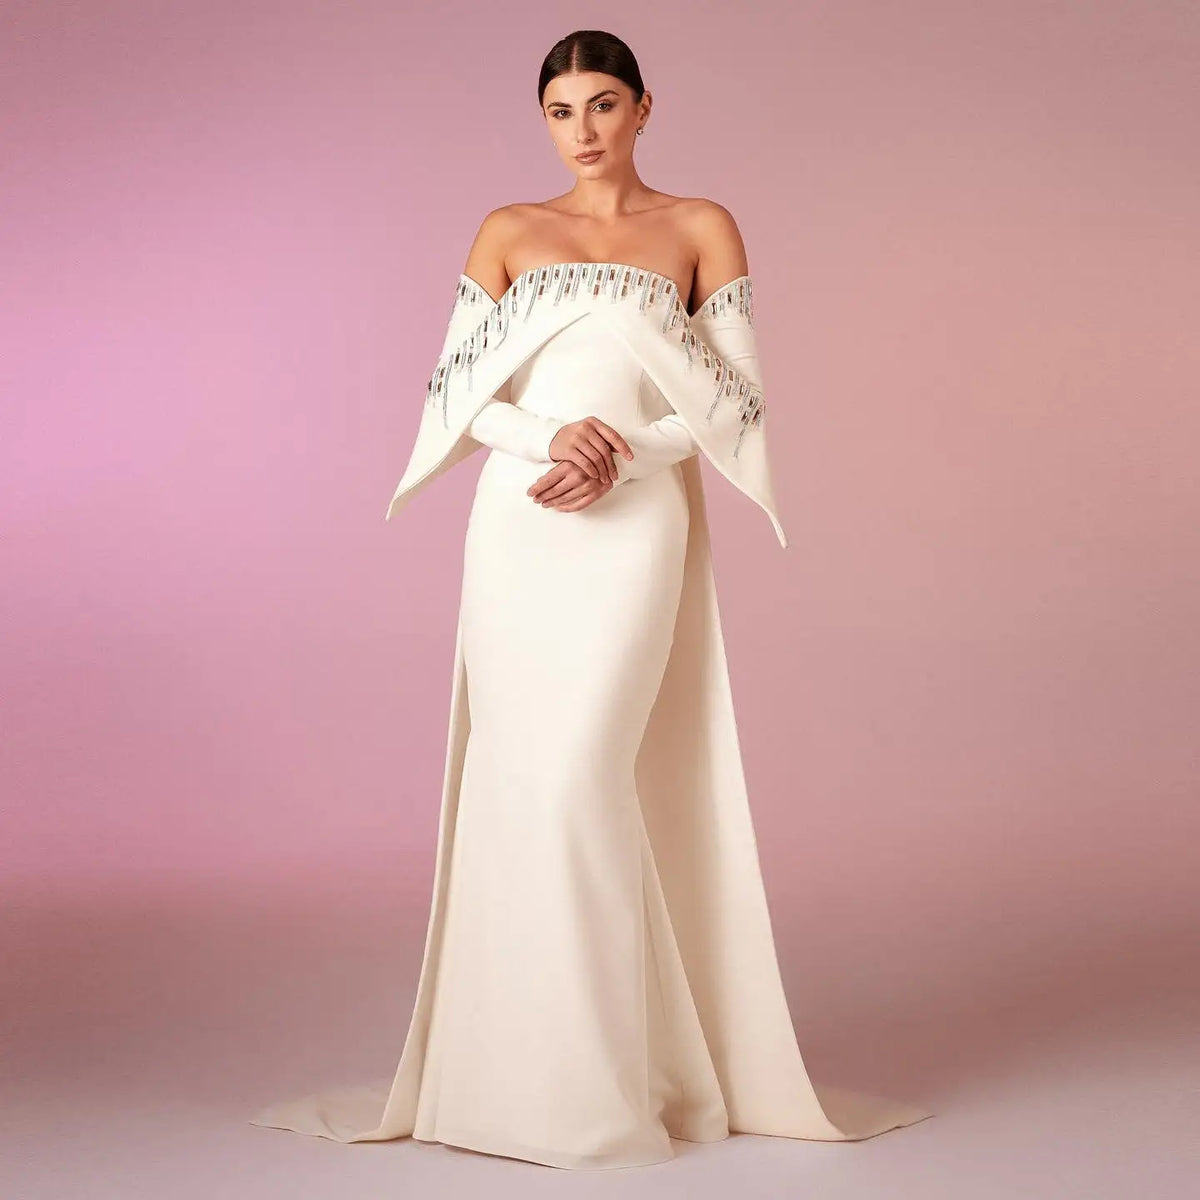 Sharon Said Elegantes Off-White Mermaid Dubai Abendkleid mit Cape, langen Ärmeln, schulterfrei, arabische Hochzeitskleider SF008